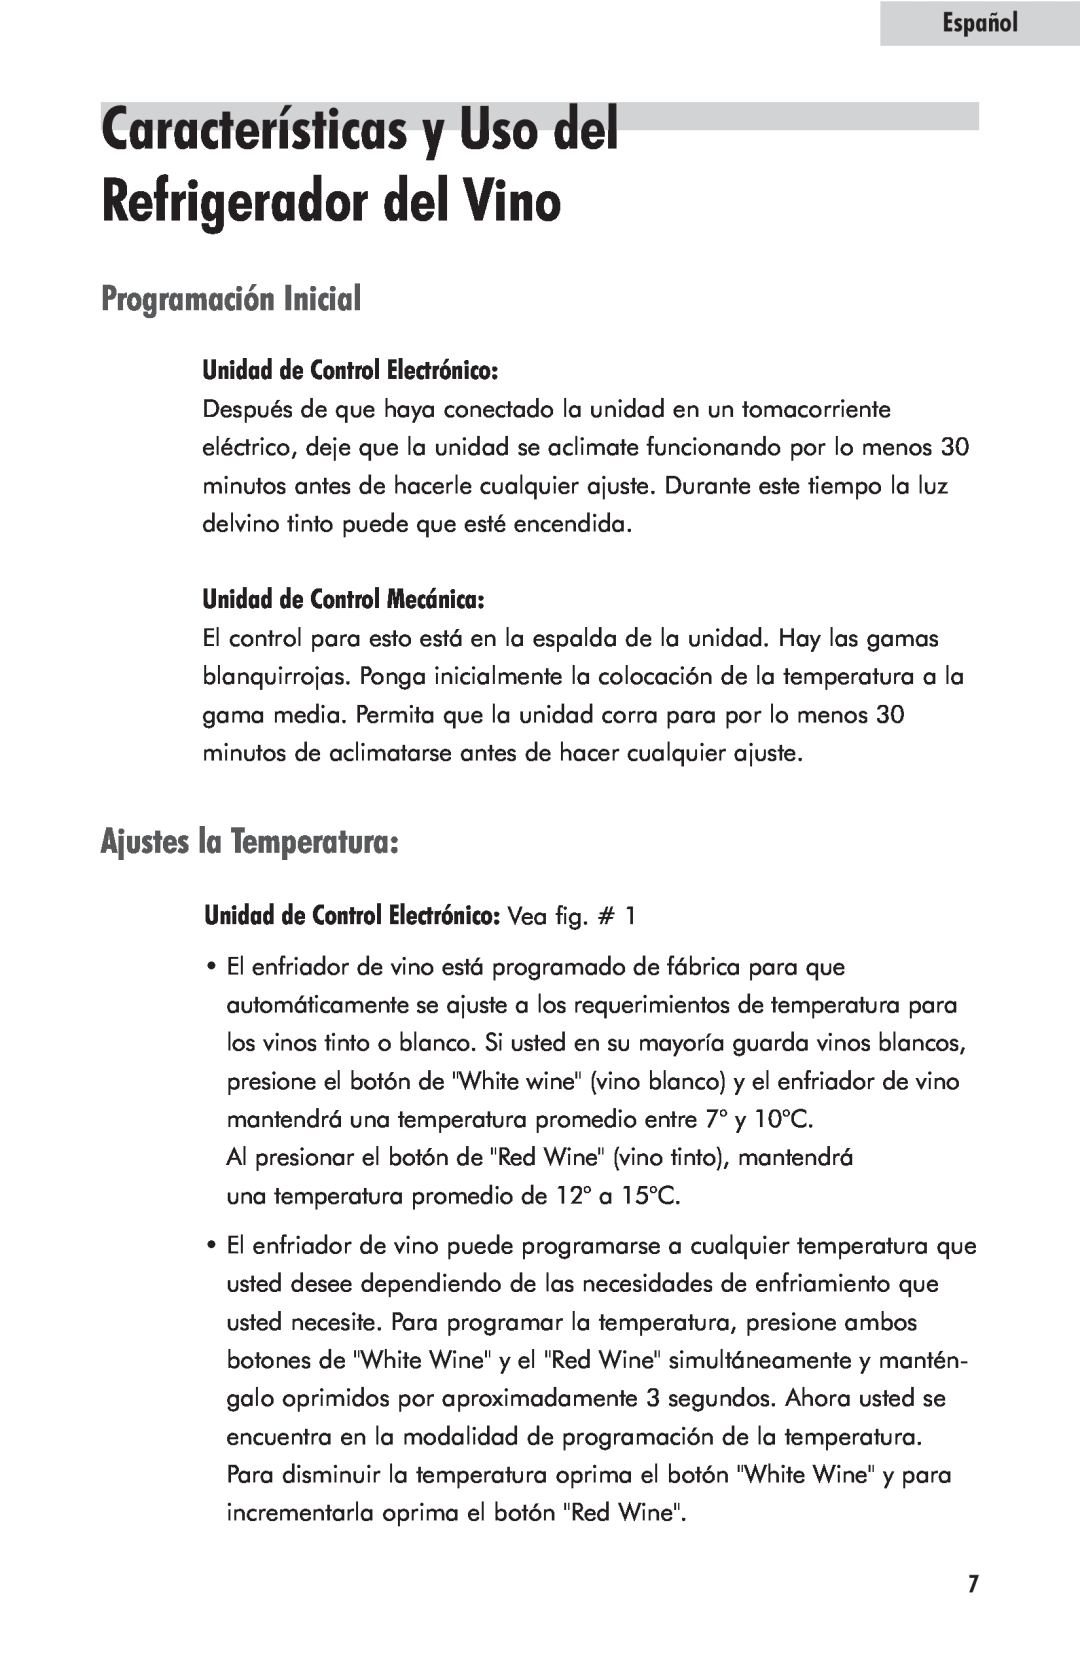 Haier HVFM24B Características y Uso del Refrigerador del Vino, Programación Inicial, Ajustes la Temperatura, Español 